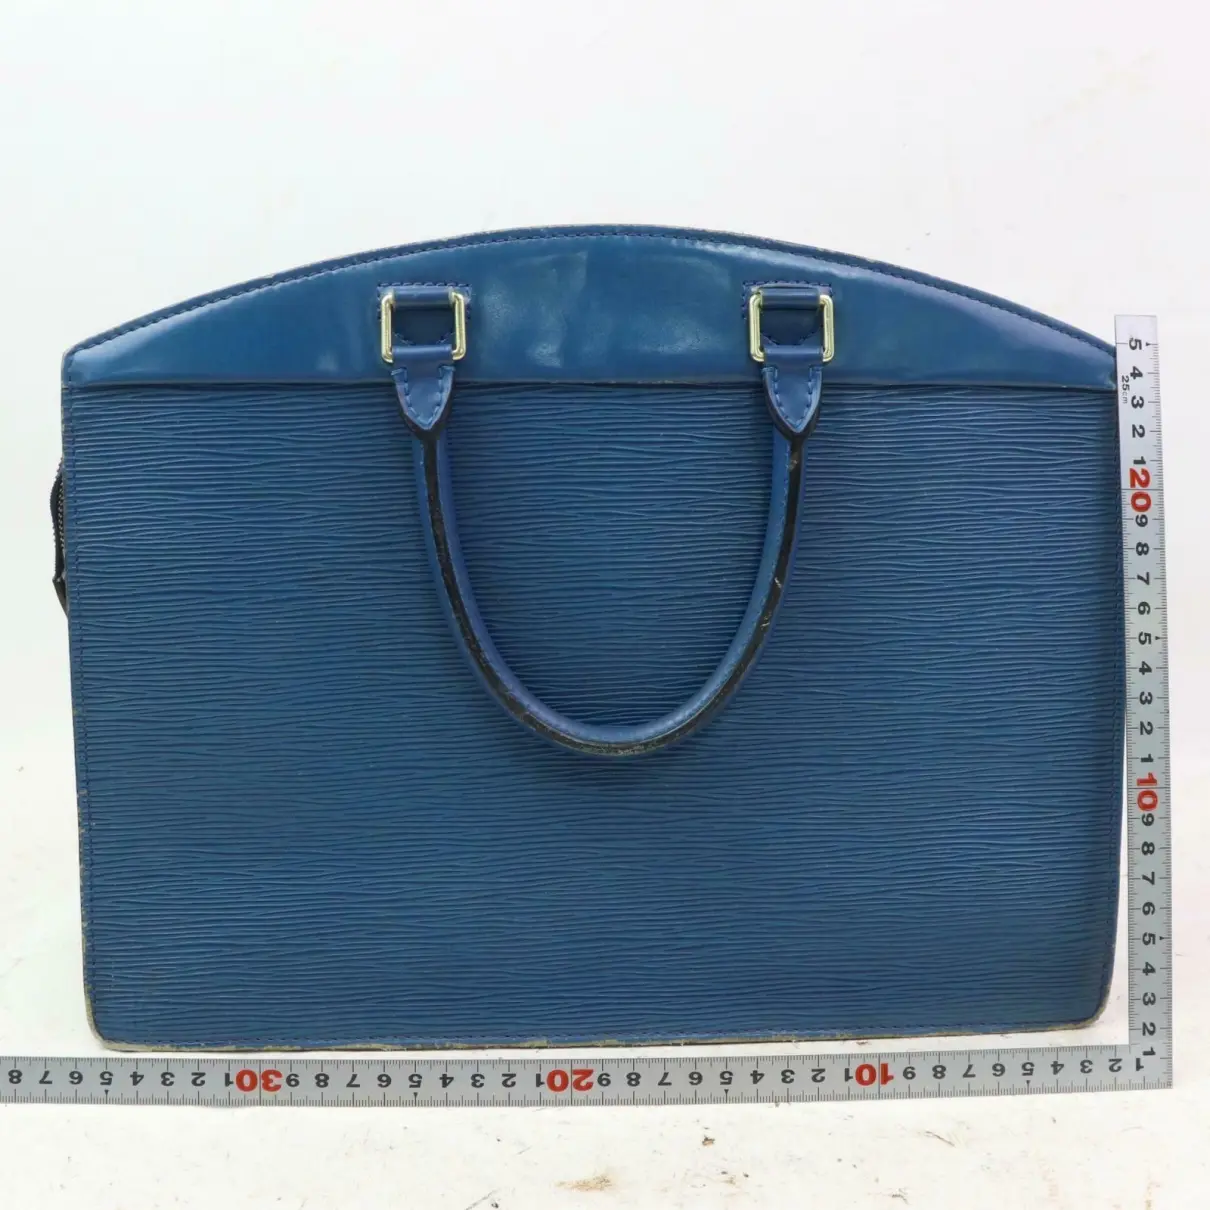 Louis Vuitton Vaneau leather handbag for sale - Vintage